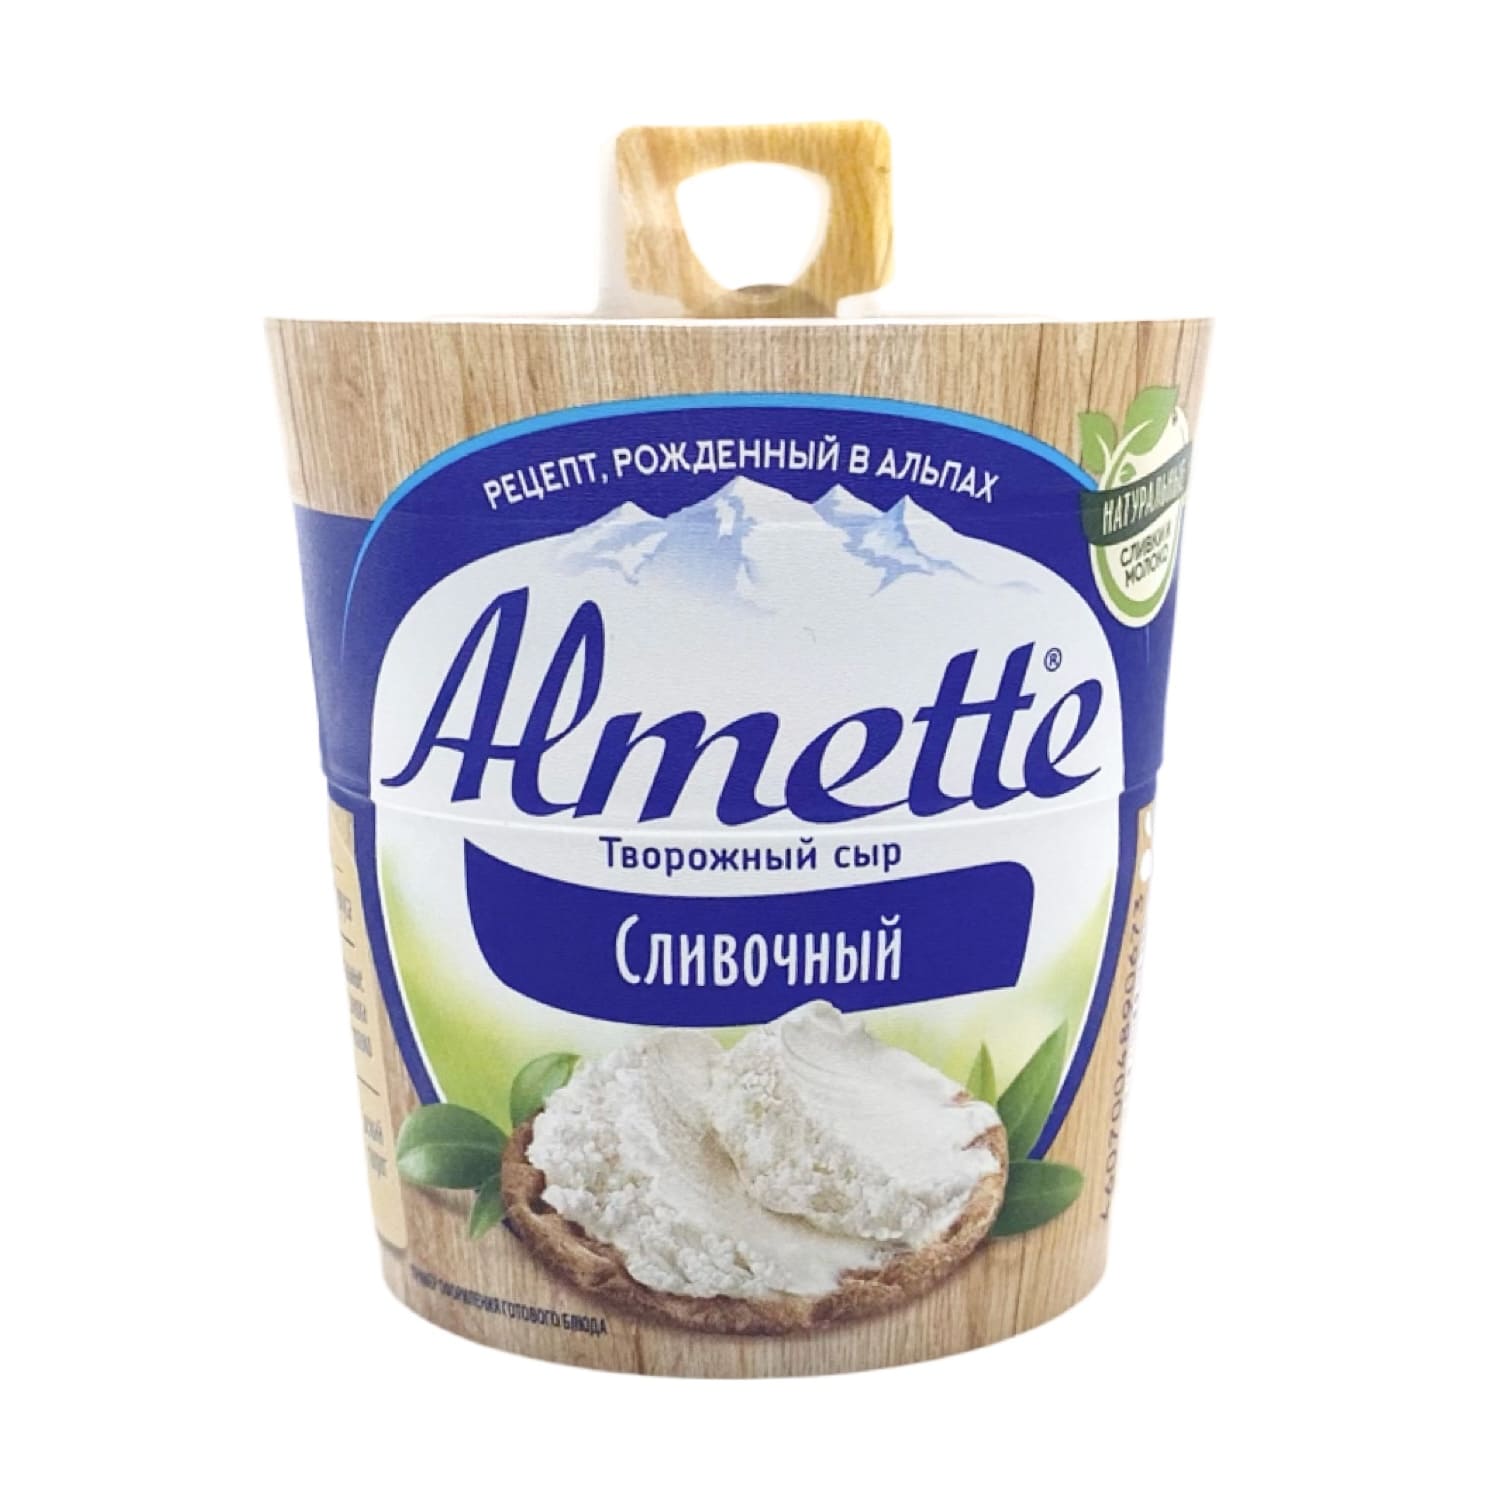 Сыр Хохланд Альметте Сливочный 150гр. жирность 60%